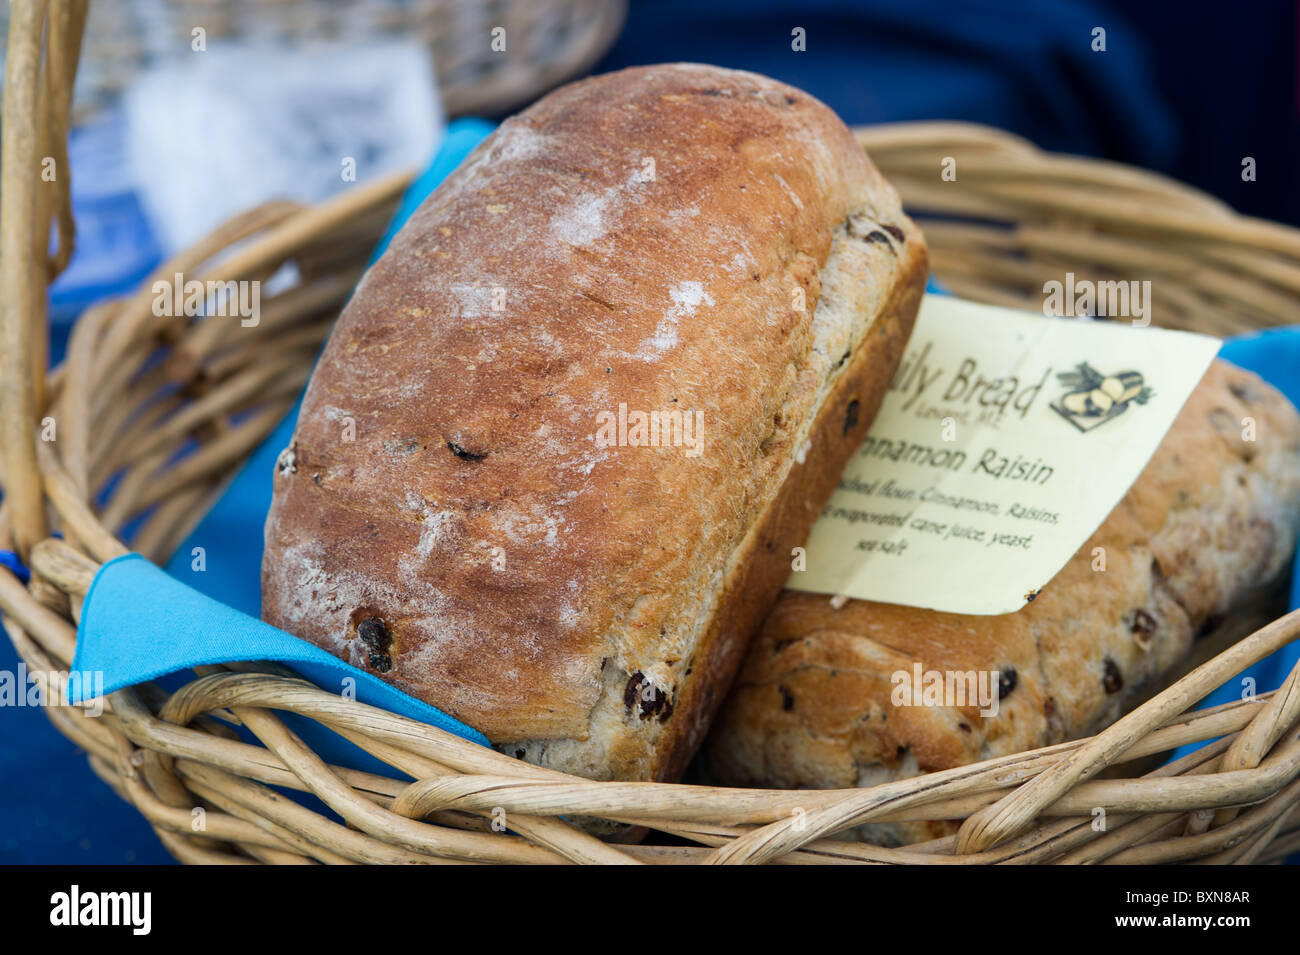 Bread in basket Stock Photo